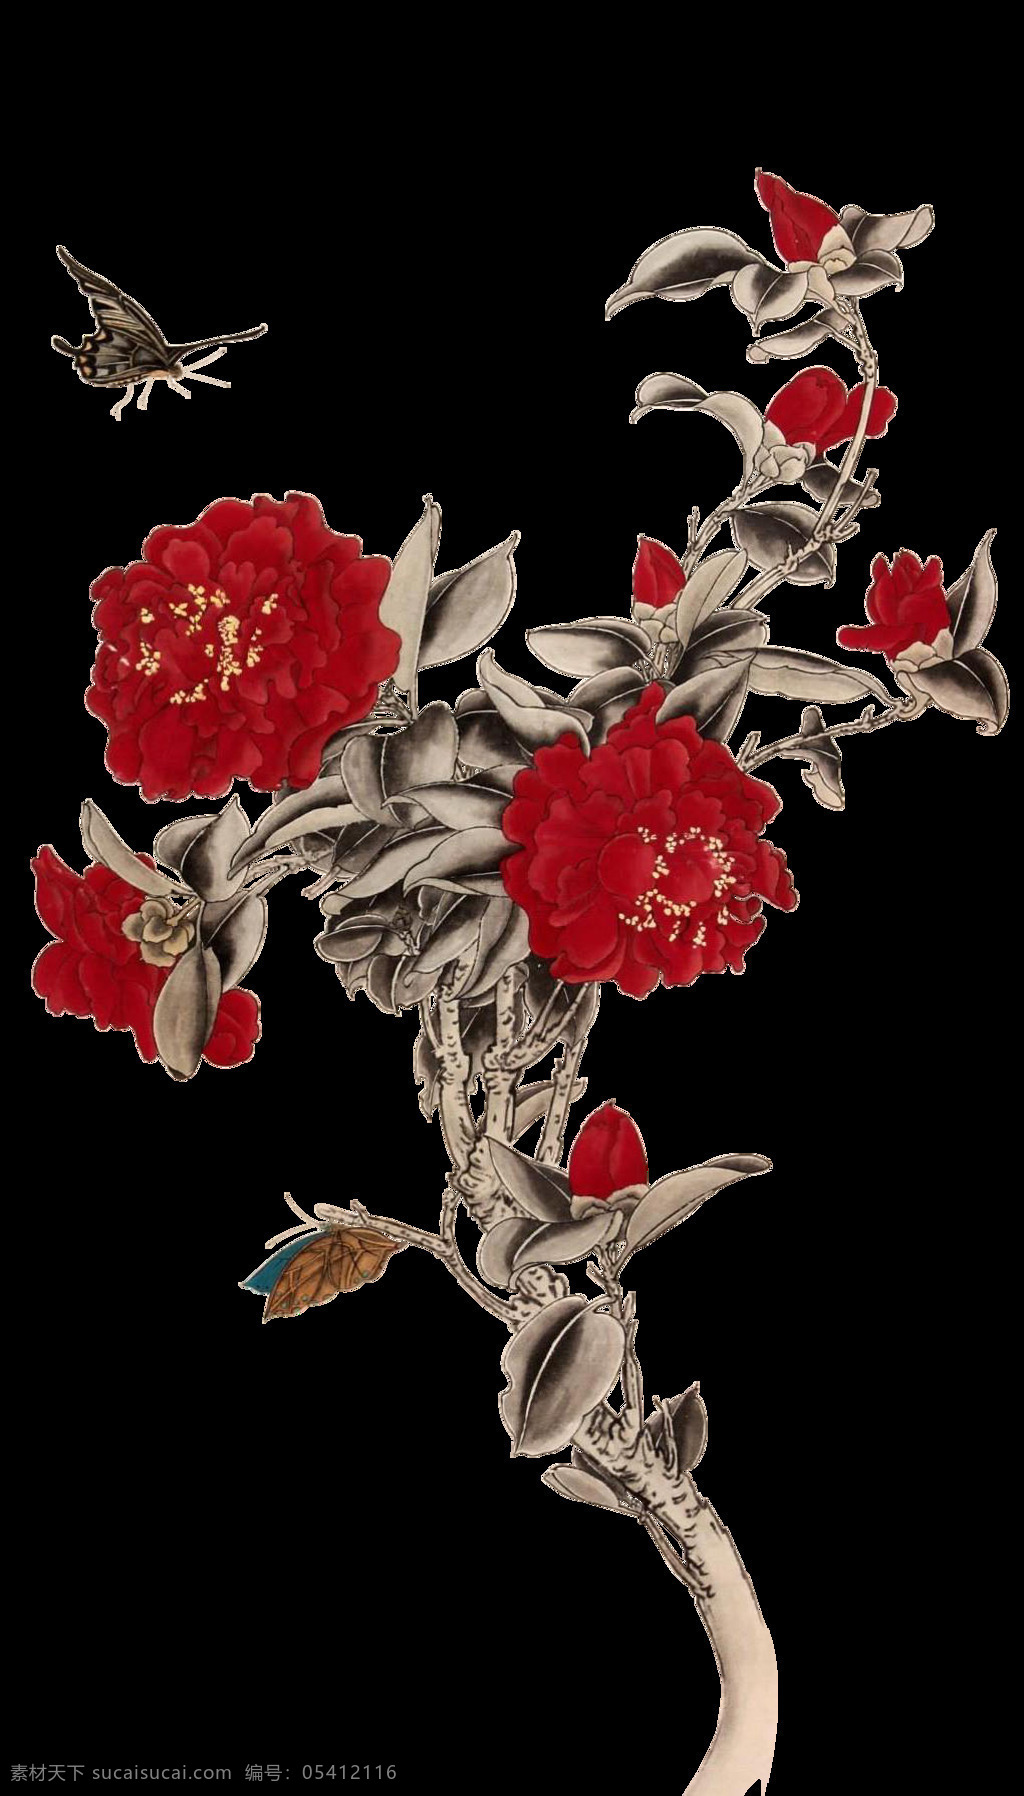 深 红色 花枝 蝴蝶 画 元素 花朵 矢量素材 树枝 设计素材 深红色 设计元素 装饰素材 装饰图案 png元素 效果素材 png效果图